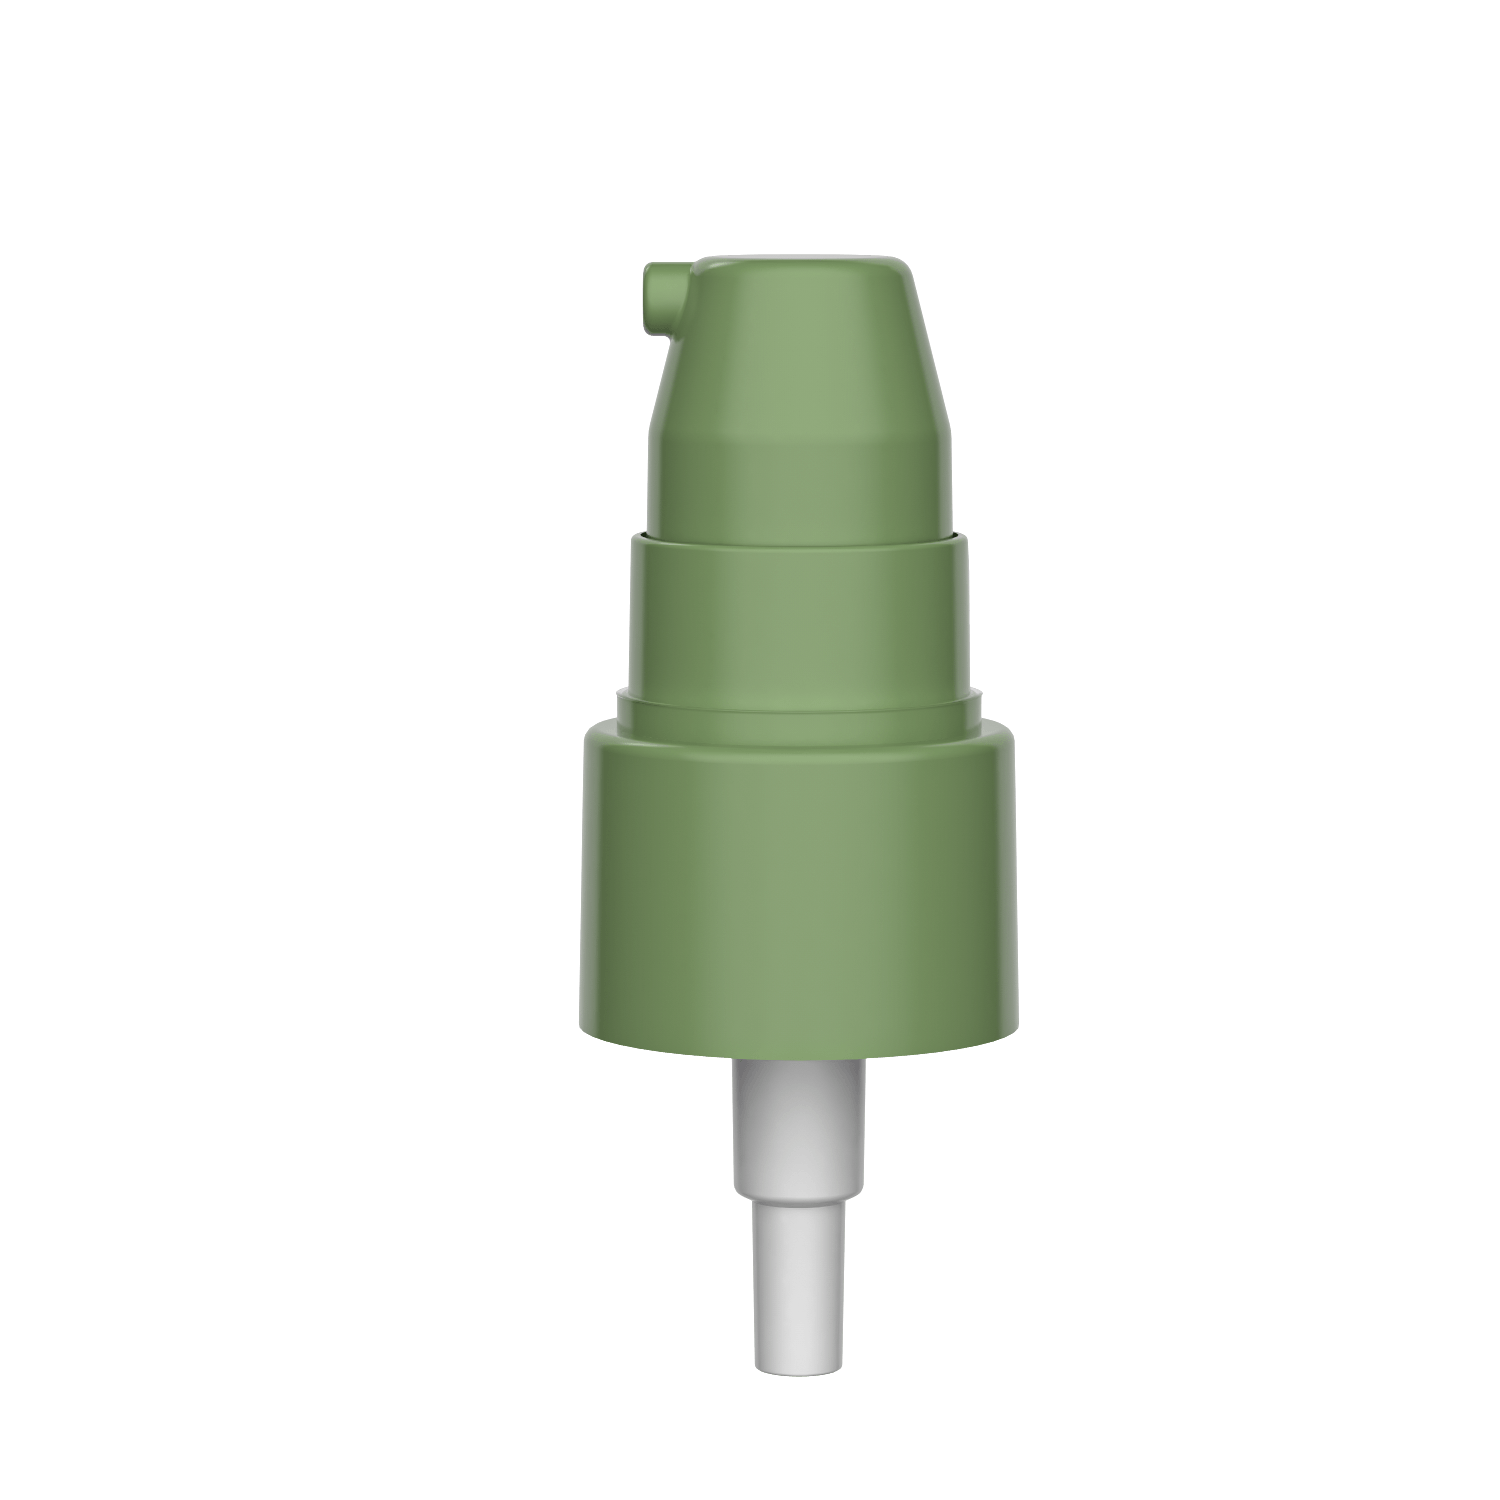 HD-417A 24/410 pompa per crema cosmetico ad alto output 0.4-0.5CC Pompa di trattamento